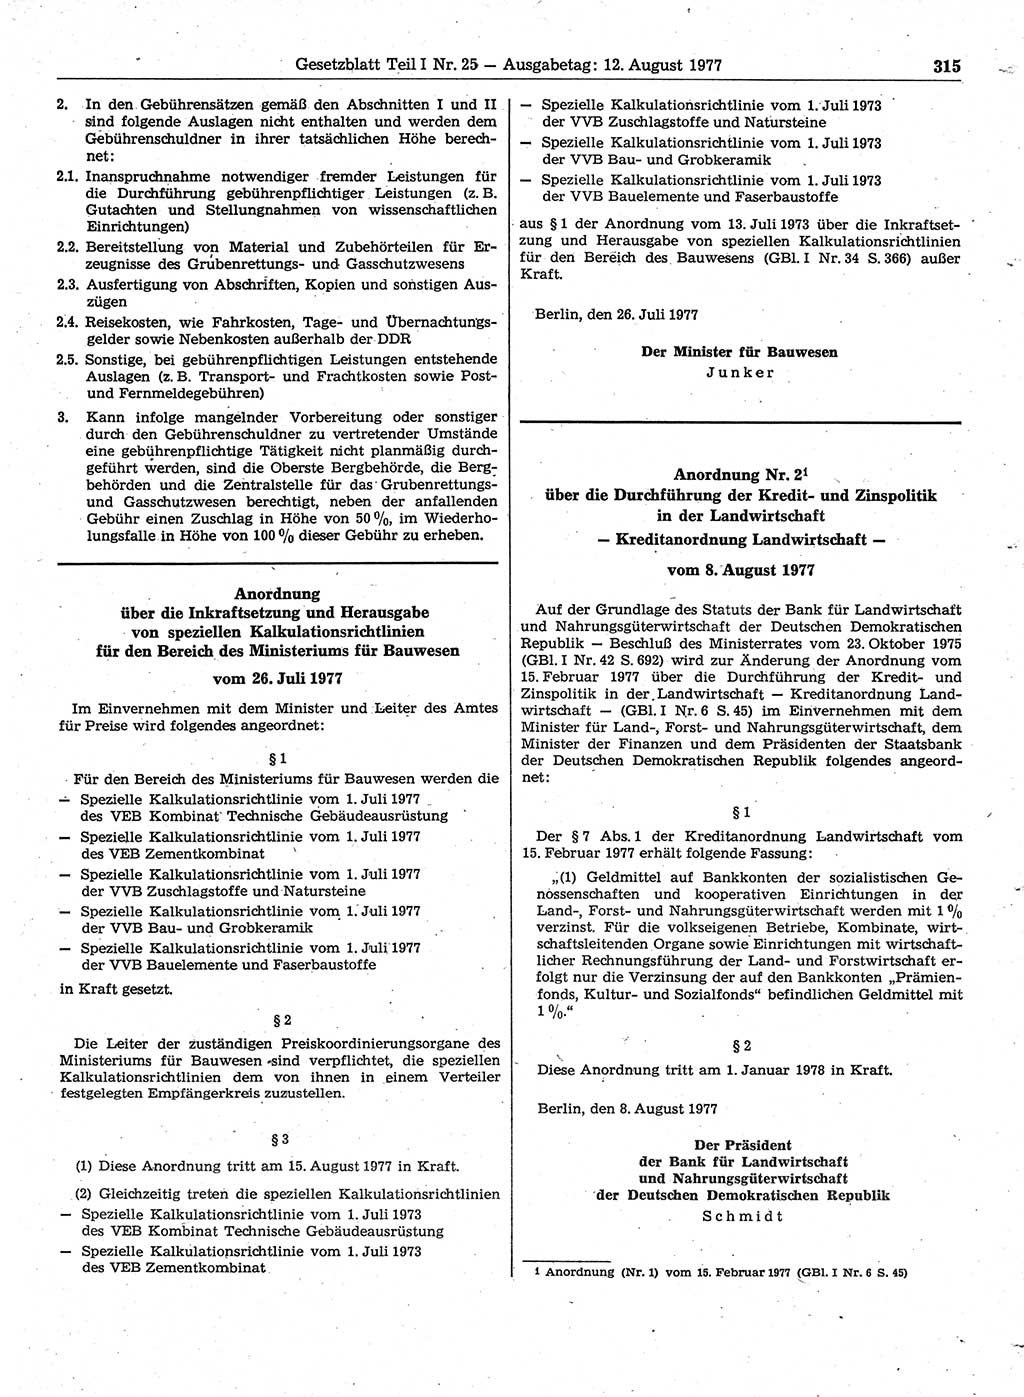 Gesetzblatt (GBl.) der Deutschen Demokratischen Republik (DDR) Teil Ⅰ 1977, Seite 315 (GBl. DDR Ⅰ 1977, S. 315)